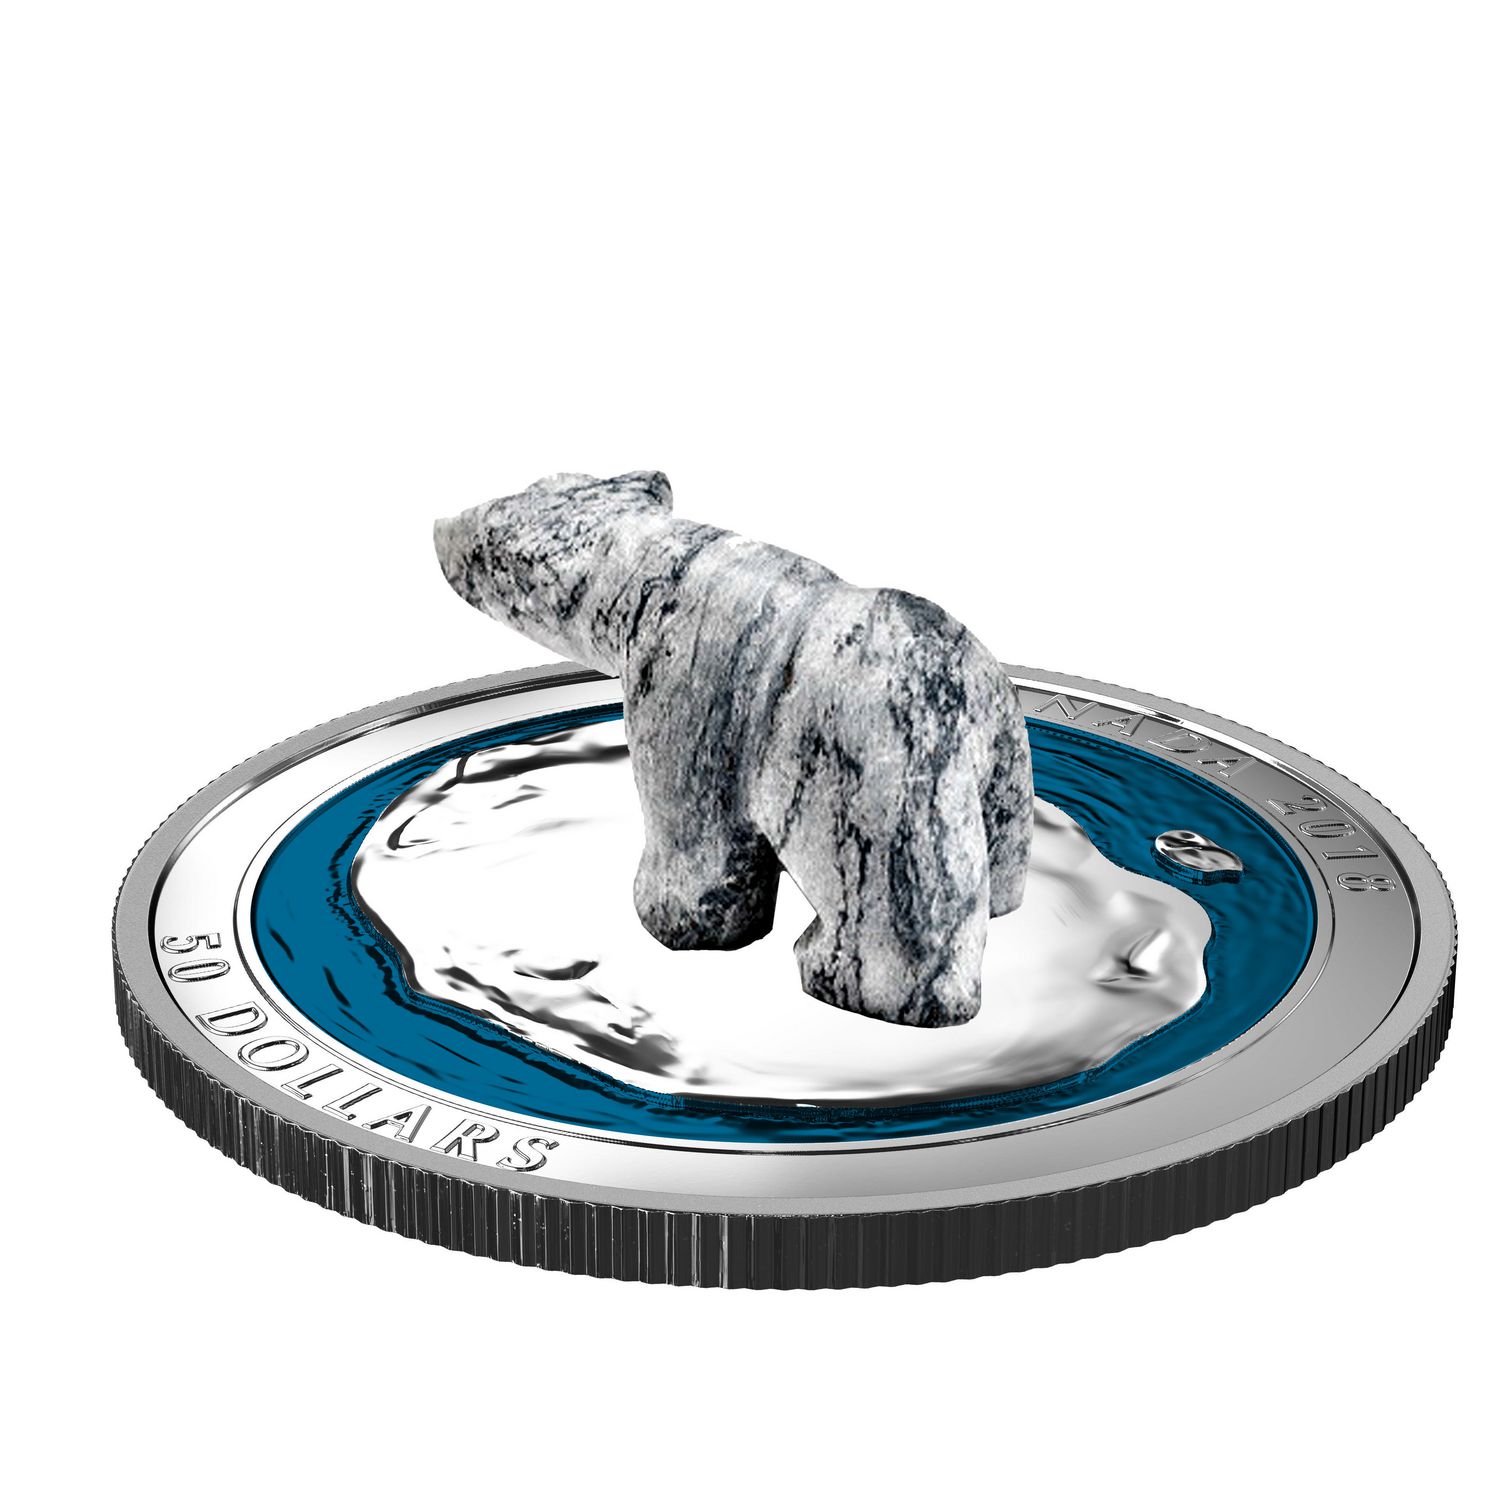 Polar Bear Soapstone Sculpture Royal Canadian Mint 5 Oz